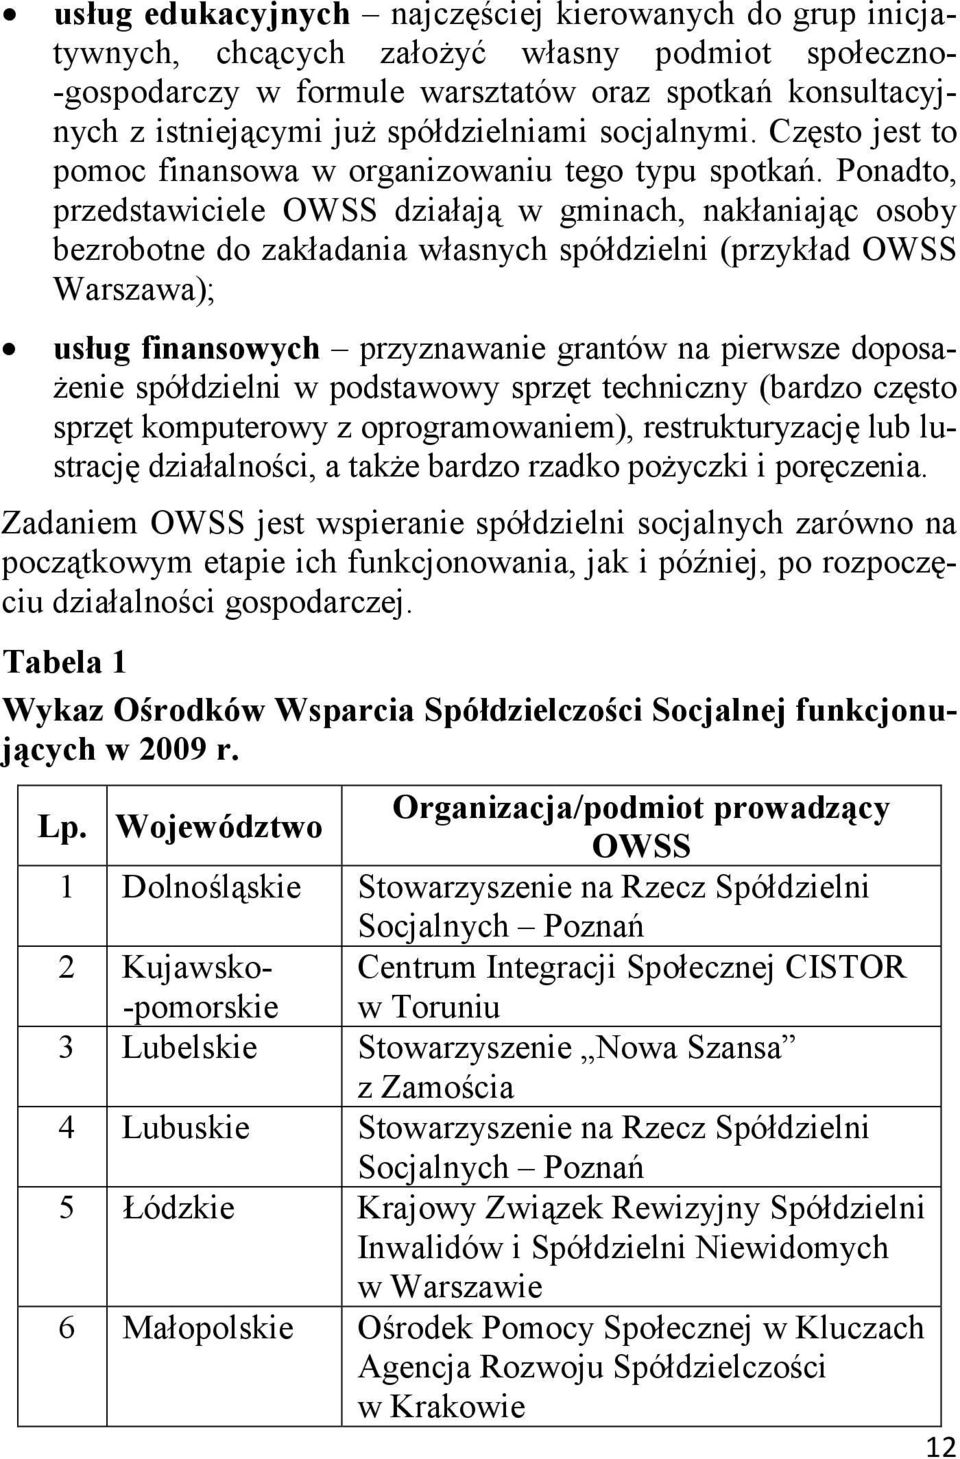 Ponadto, przedstawiciele OWSS działają w gminach, nakłaniając osoby bezrobotne do zakładania własnych spółdzielni (przykład OWSS Warszawa); usług finansowych przyznawanie grantów na pierwsze